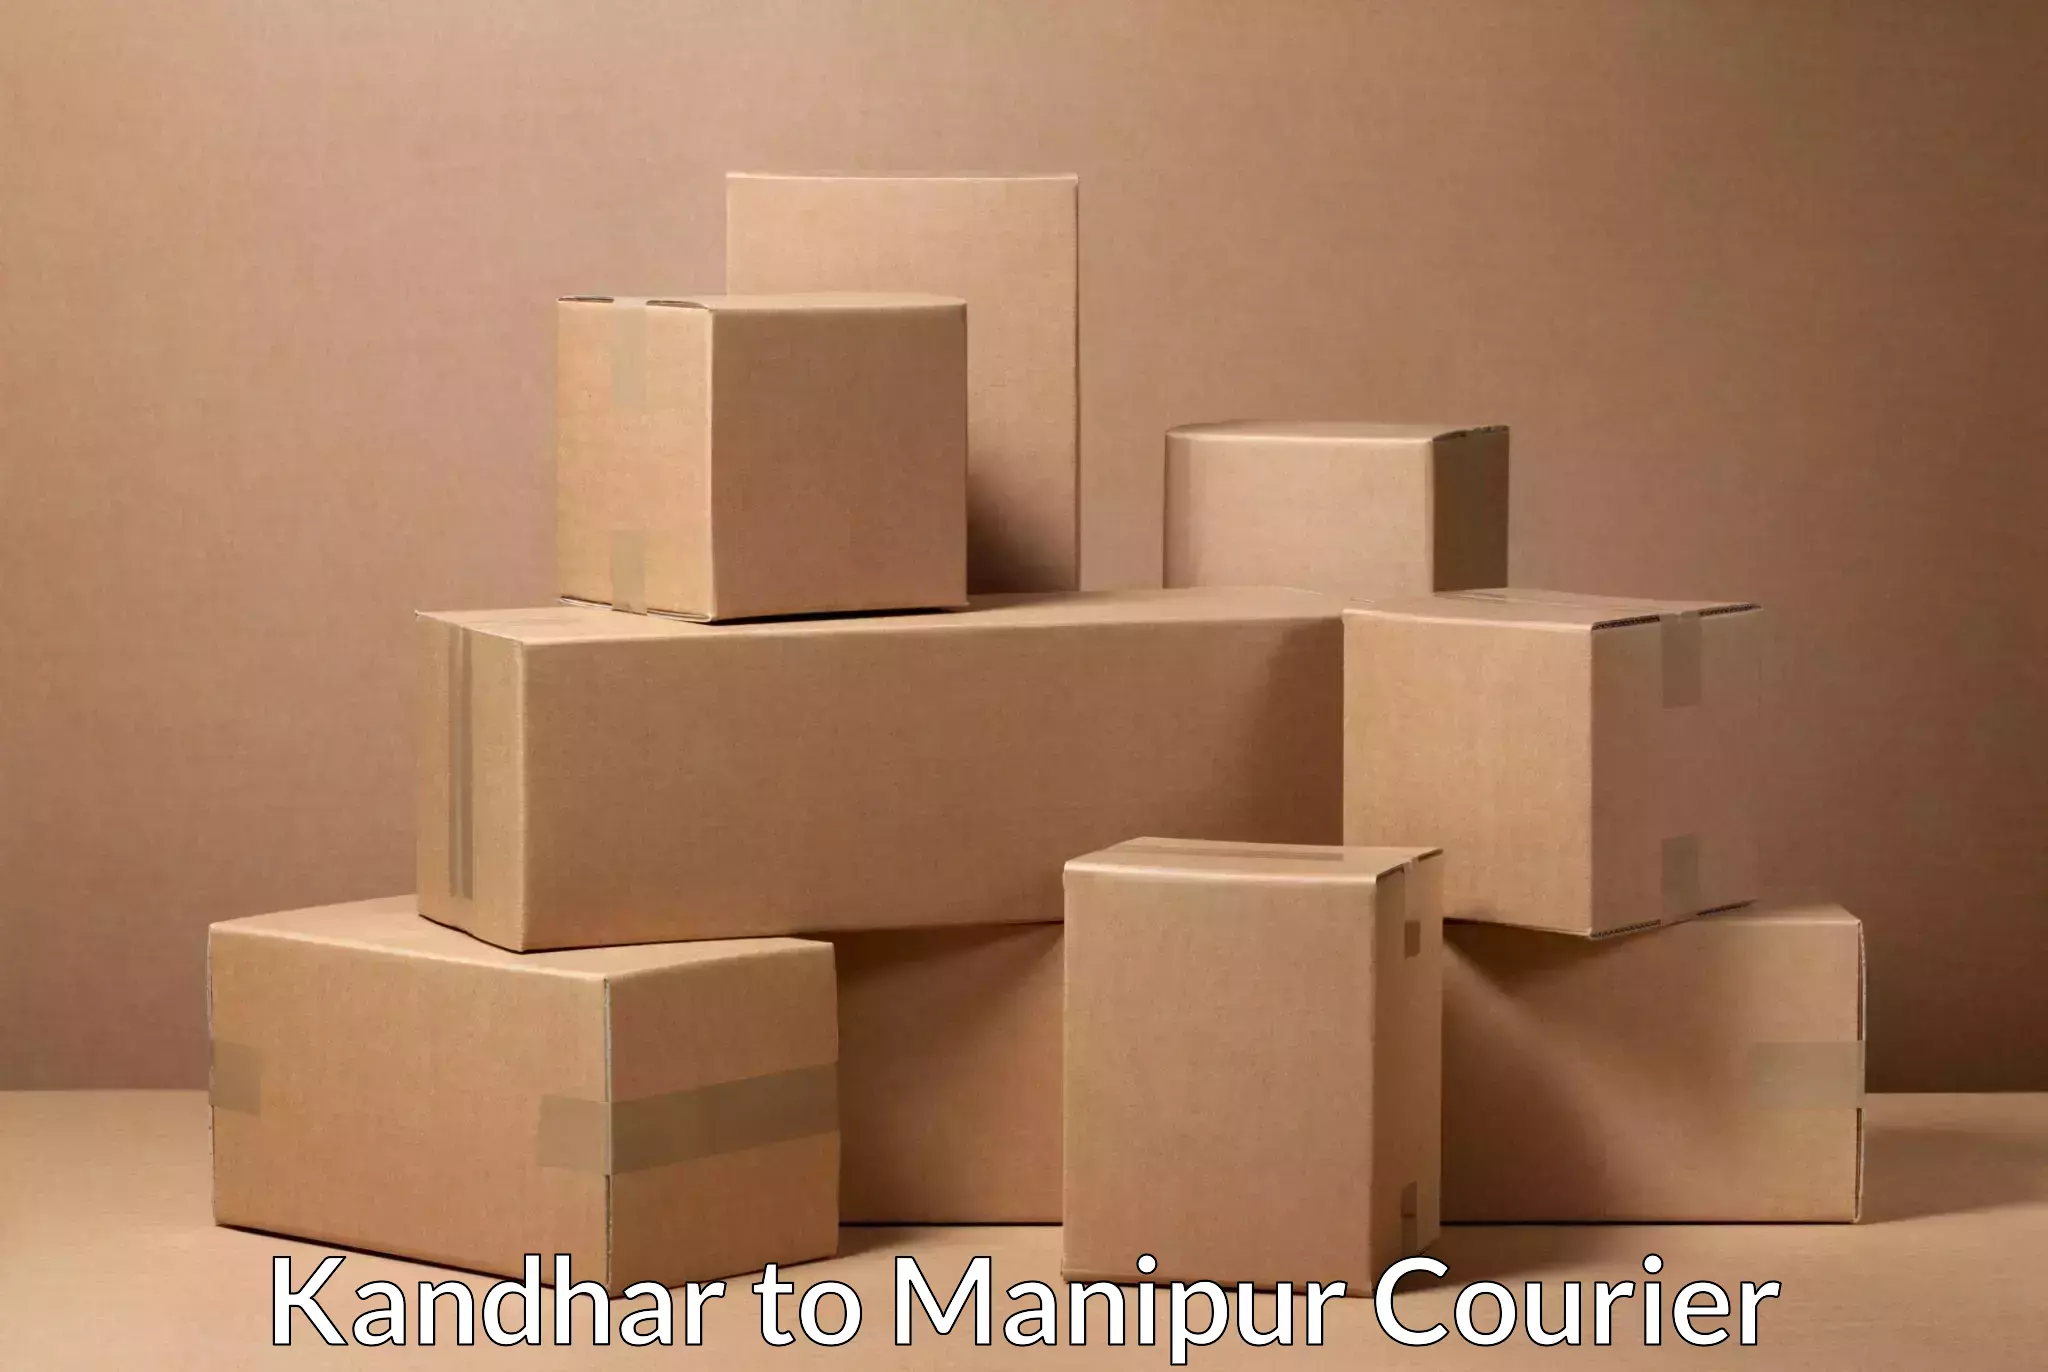 International shipping rates Kandhar to Manipur